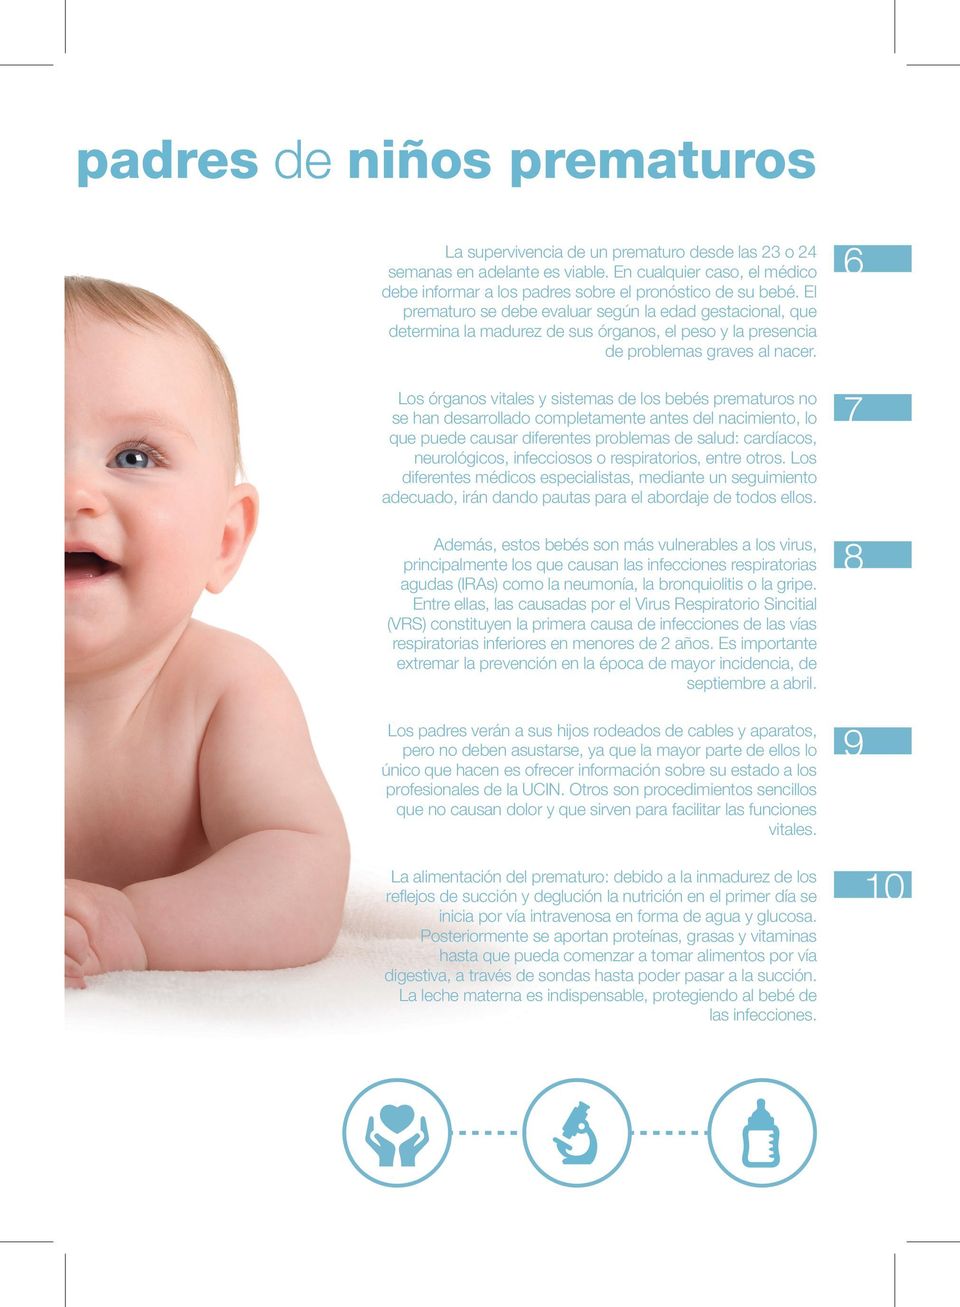 El prematuro se debe evaluar según la edad gestacional, que determina la madurez de sus órganos, el peso y la presencia de problemas graves al nacer.